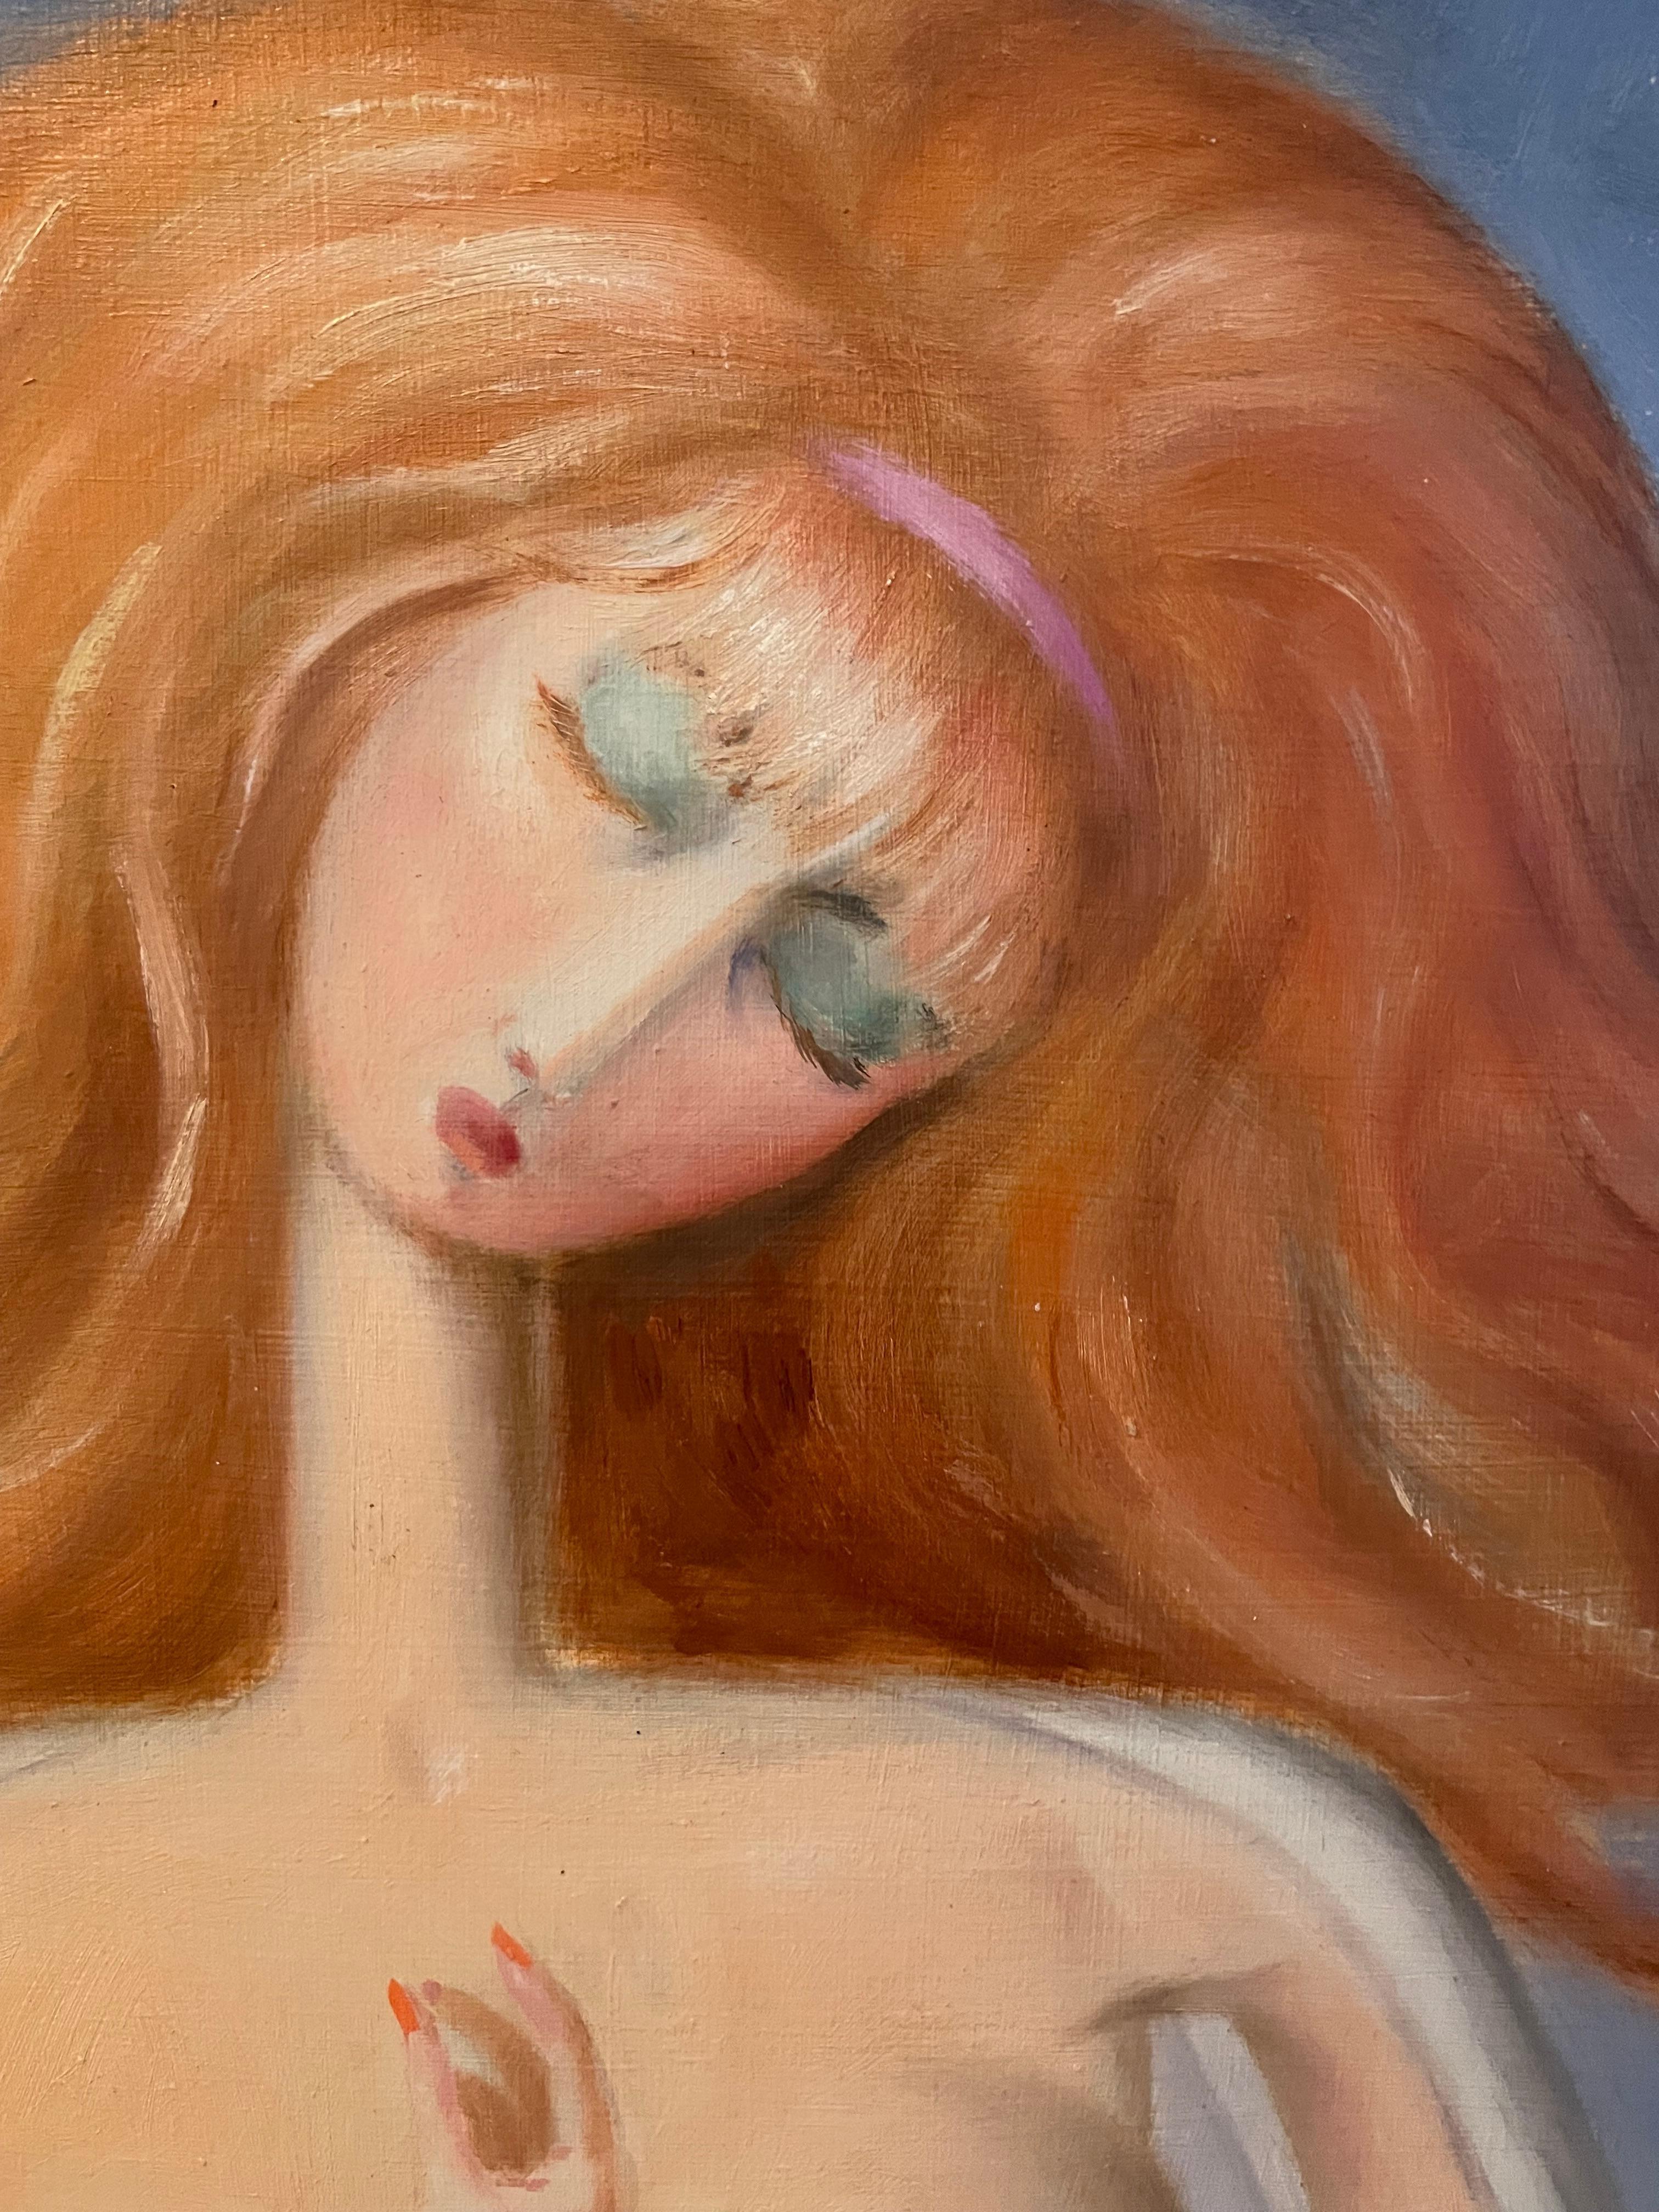 Sin título (Venus) - Abstract Painting Marrón de Manuel Soto Munoz